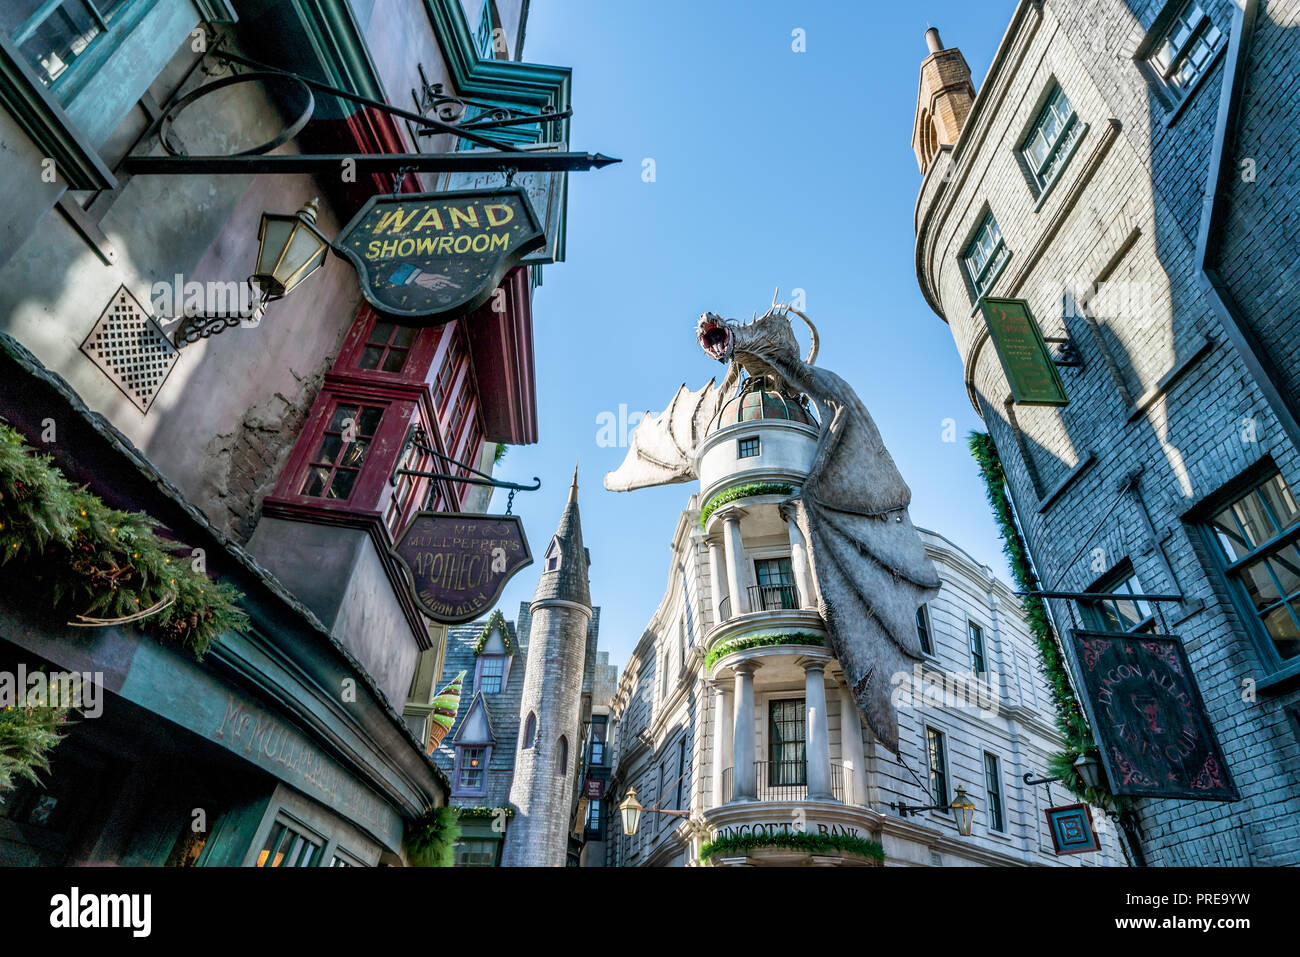 ORLANDO, Florida, USA - Dezember, 2017: Die magische Welt von Harry Potter - Der kultige Drachen in der Winkelgasse, Universal Studios Florida. Stockfoto